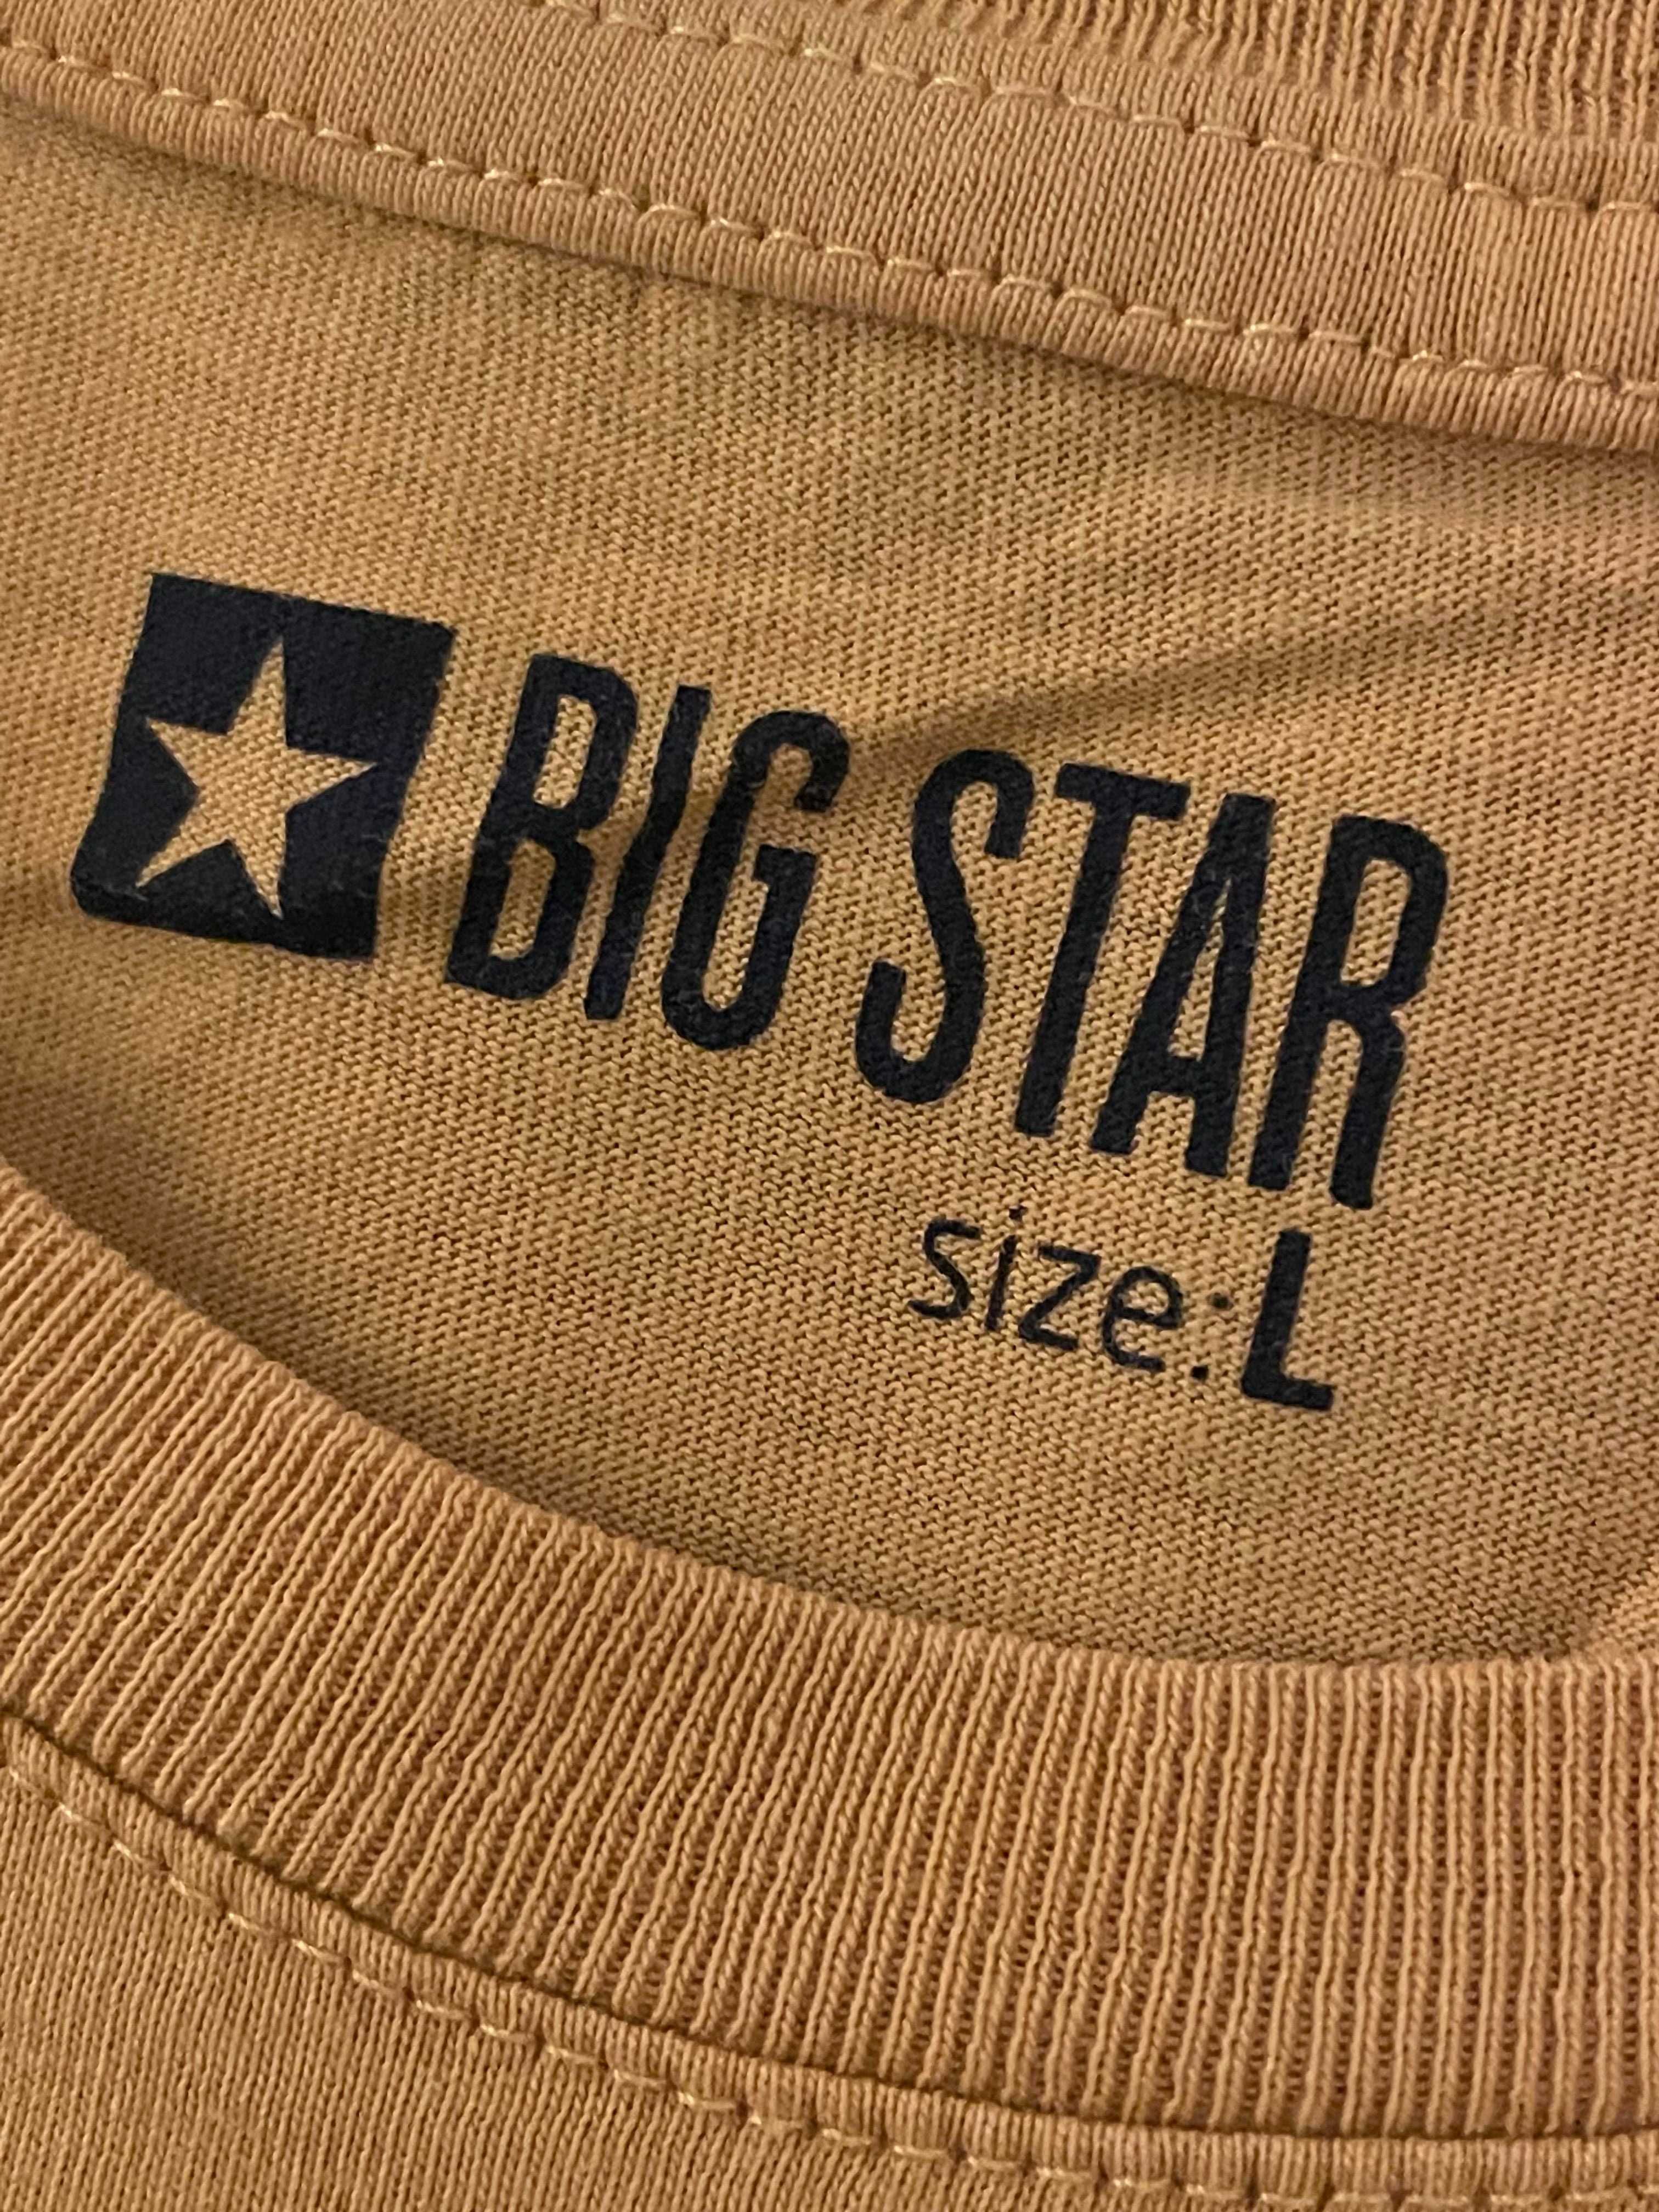 Big Star t-shirt (L)